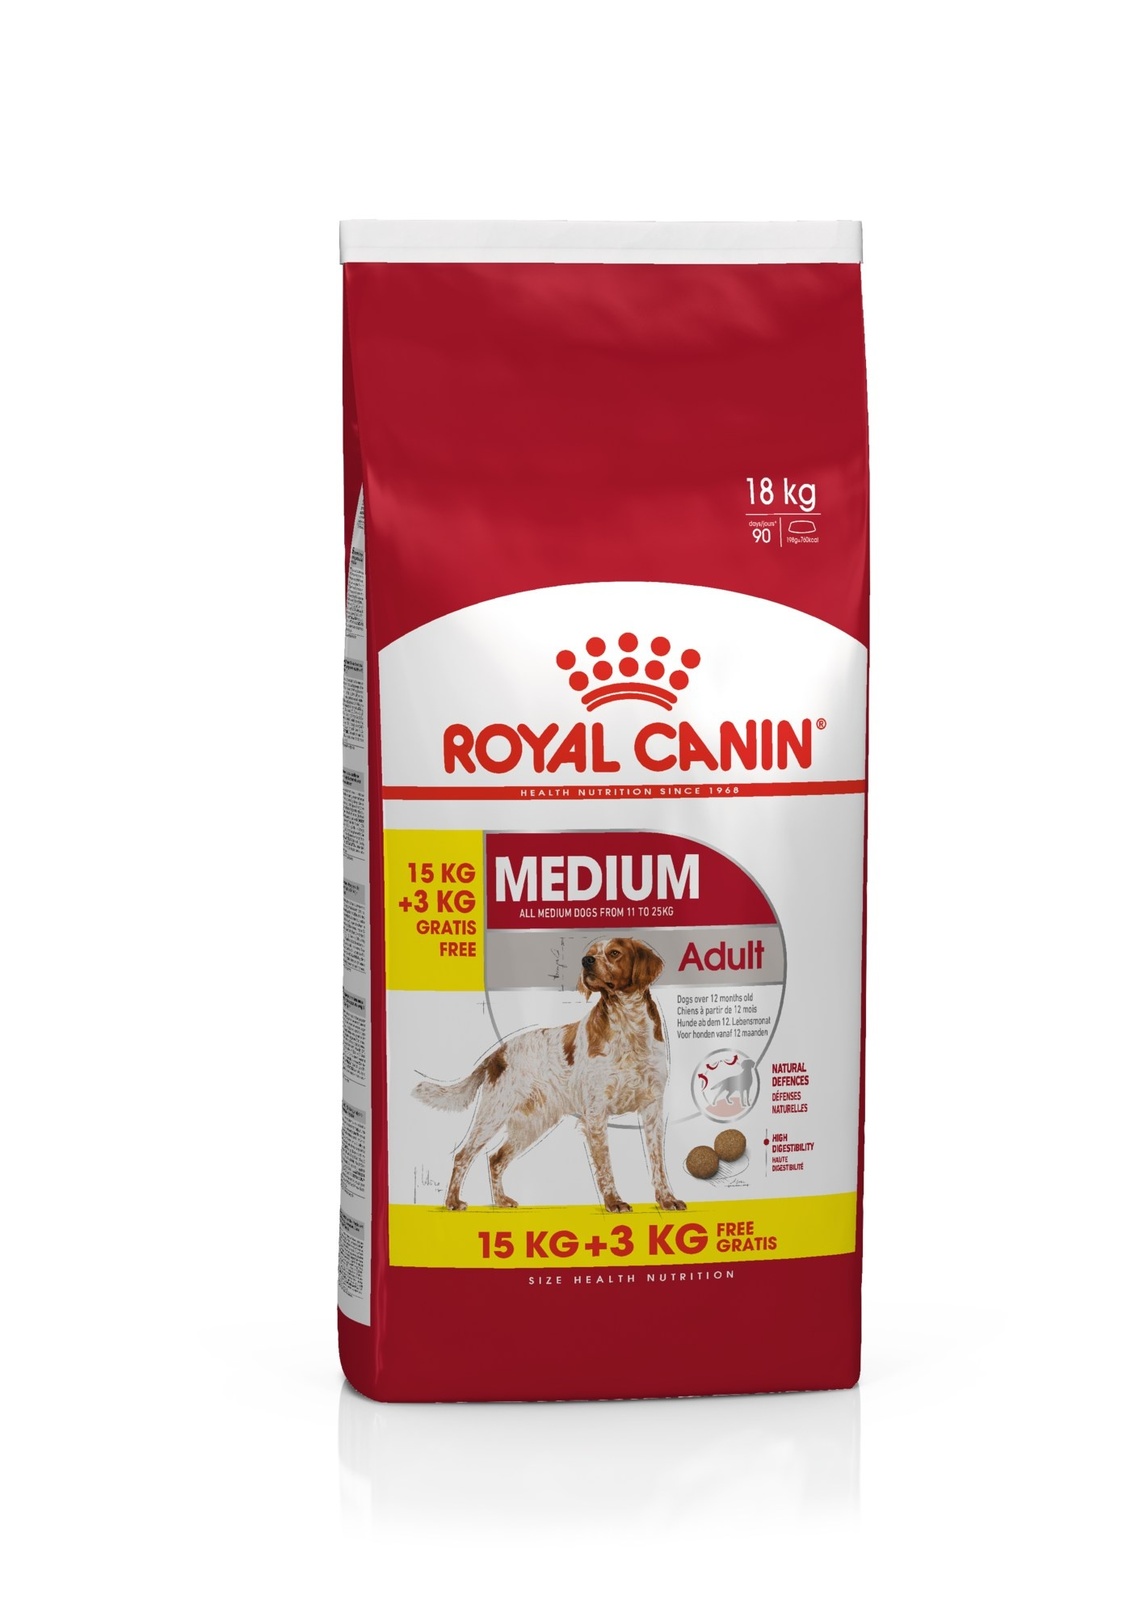 Для взрослых собак средних размеров: 11-25 кг, 1-7 лет (15 кг) Royal Canin (сухие корма) Для взрослых собак средних размеров: 11-25 кг, 1-7 лет (15 кг) - фото 5